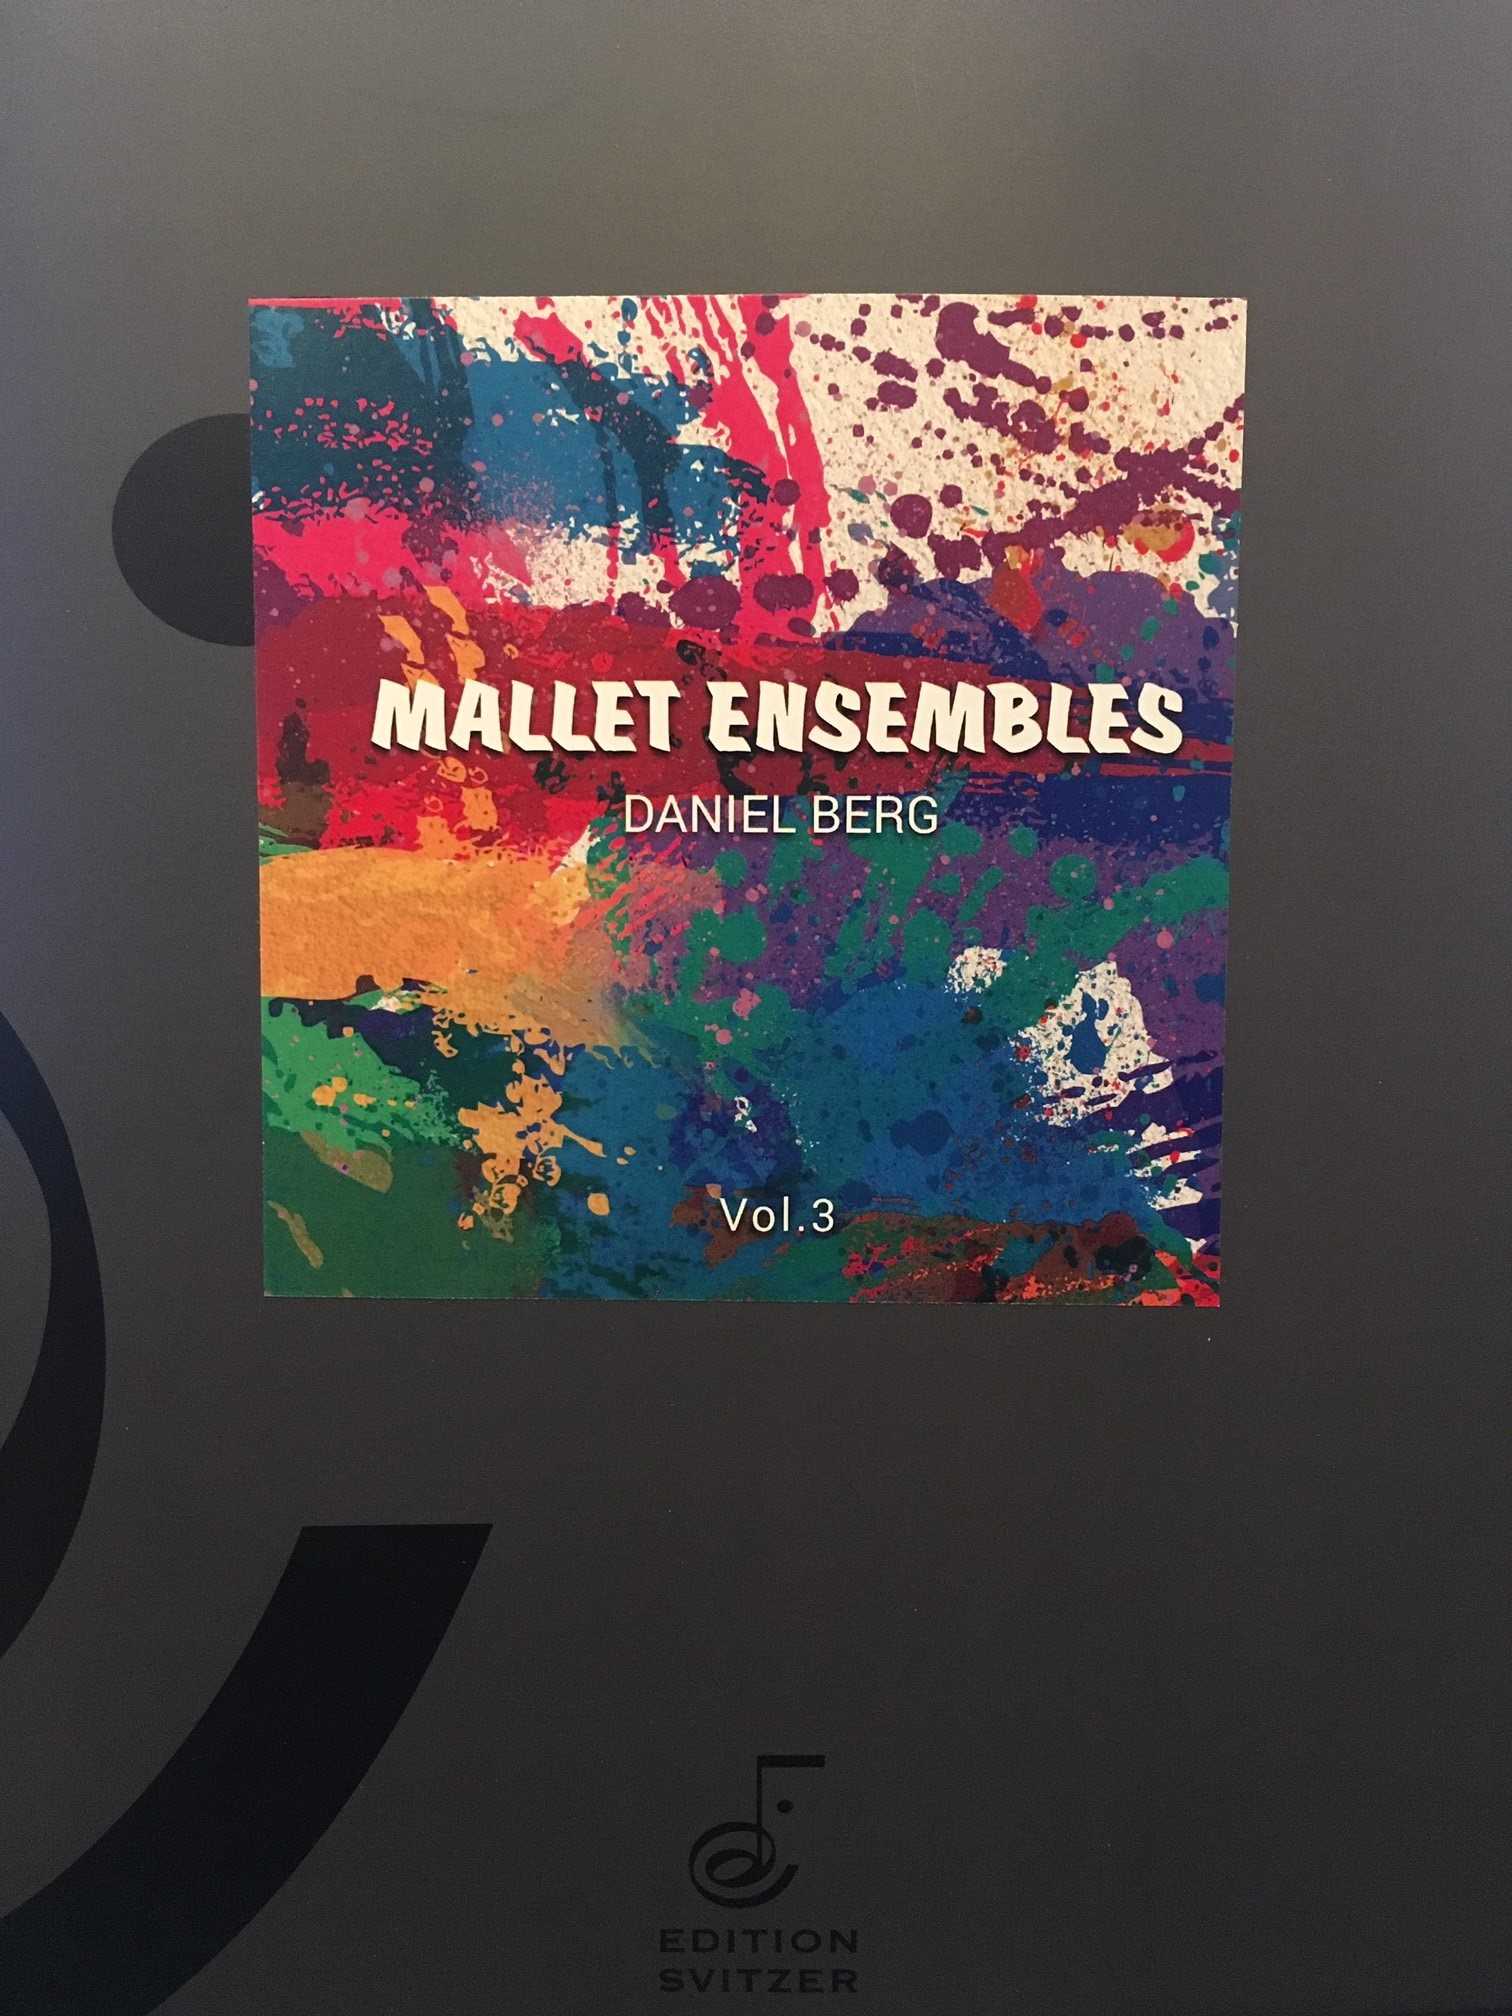 Mallet Ensembles Vol. 3 by Daniel Berg